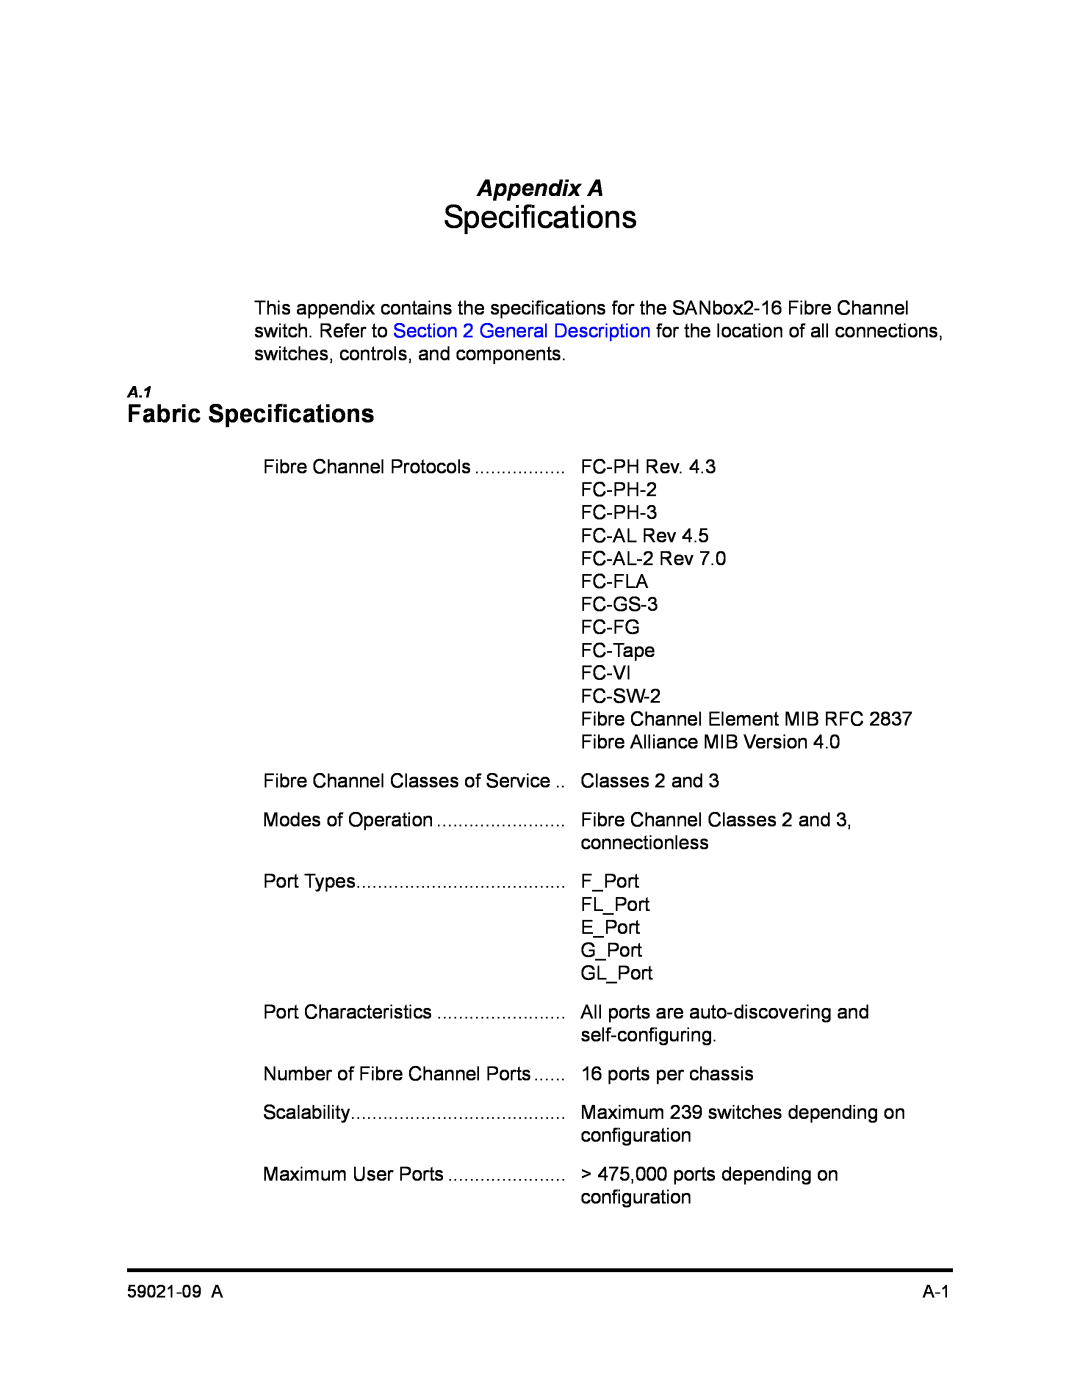 Q-Logic SB2A-16B, QLA2342 manual Fabric Specifications, Appendix A 